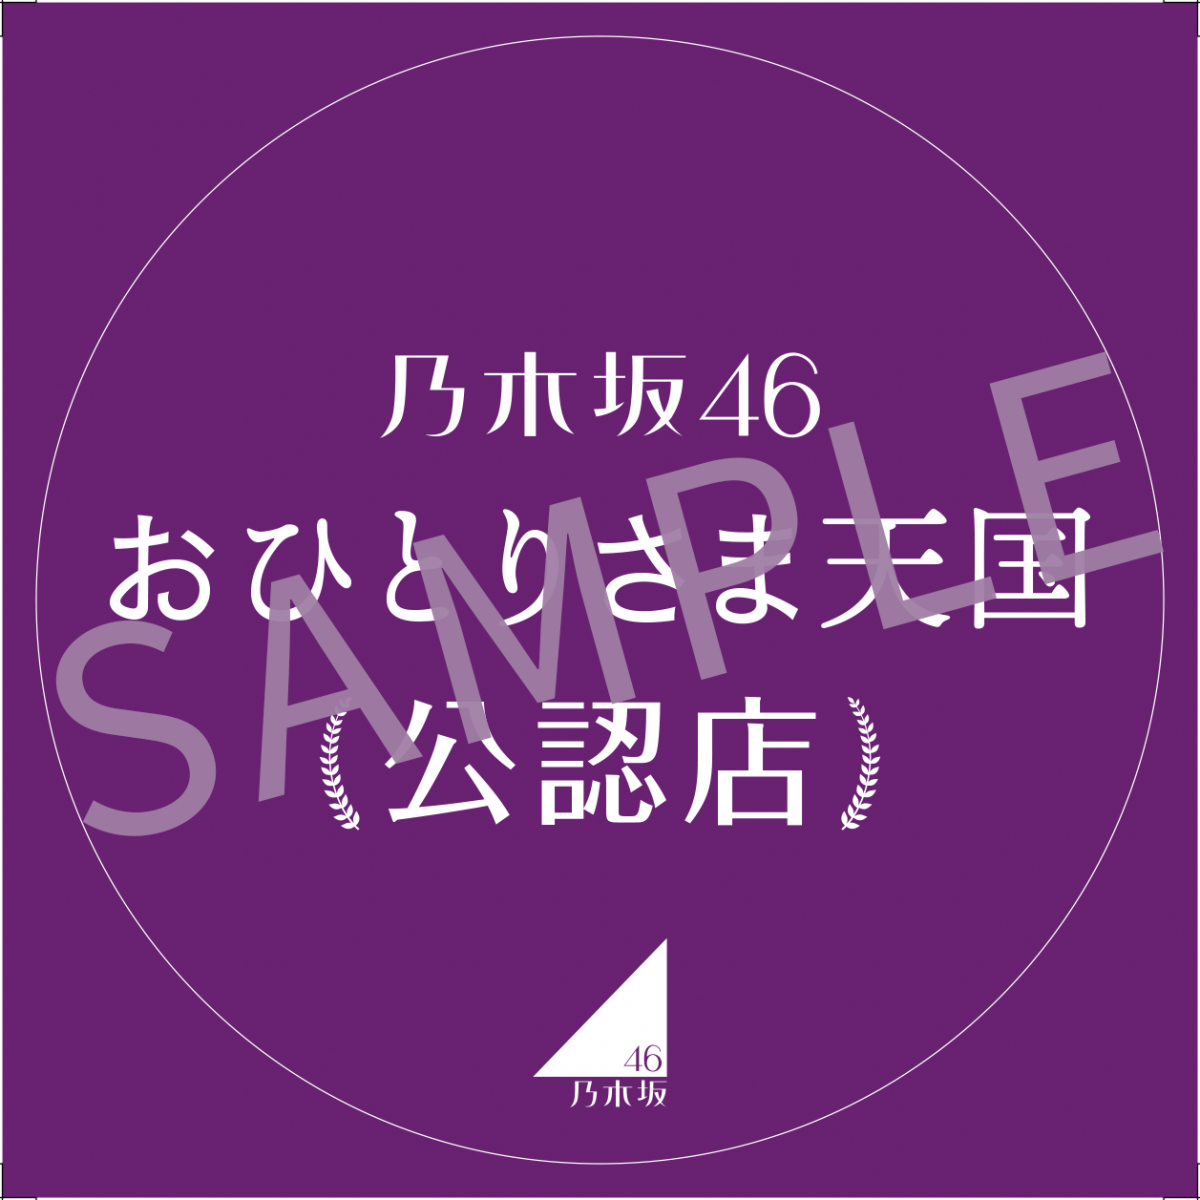 一個人去日本也可以去爽！乃木坂46成員推介100間適合獨遊的日本玩樂飲食店清單！